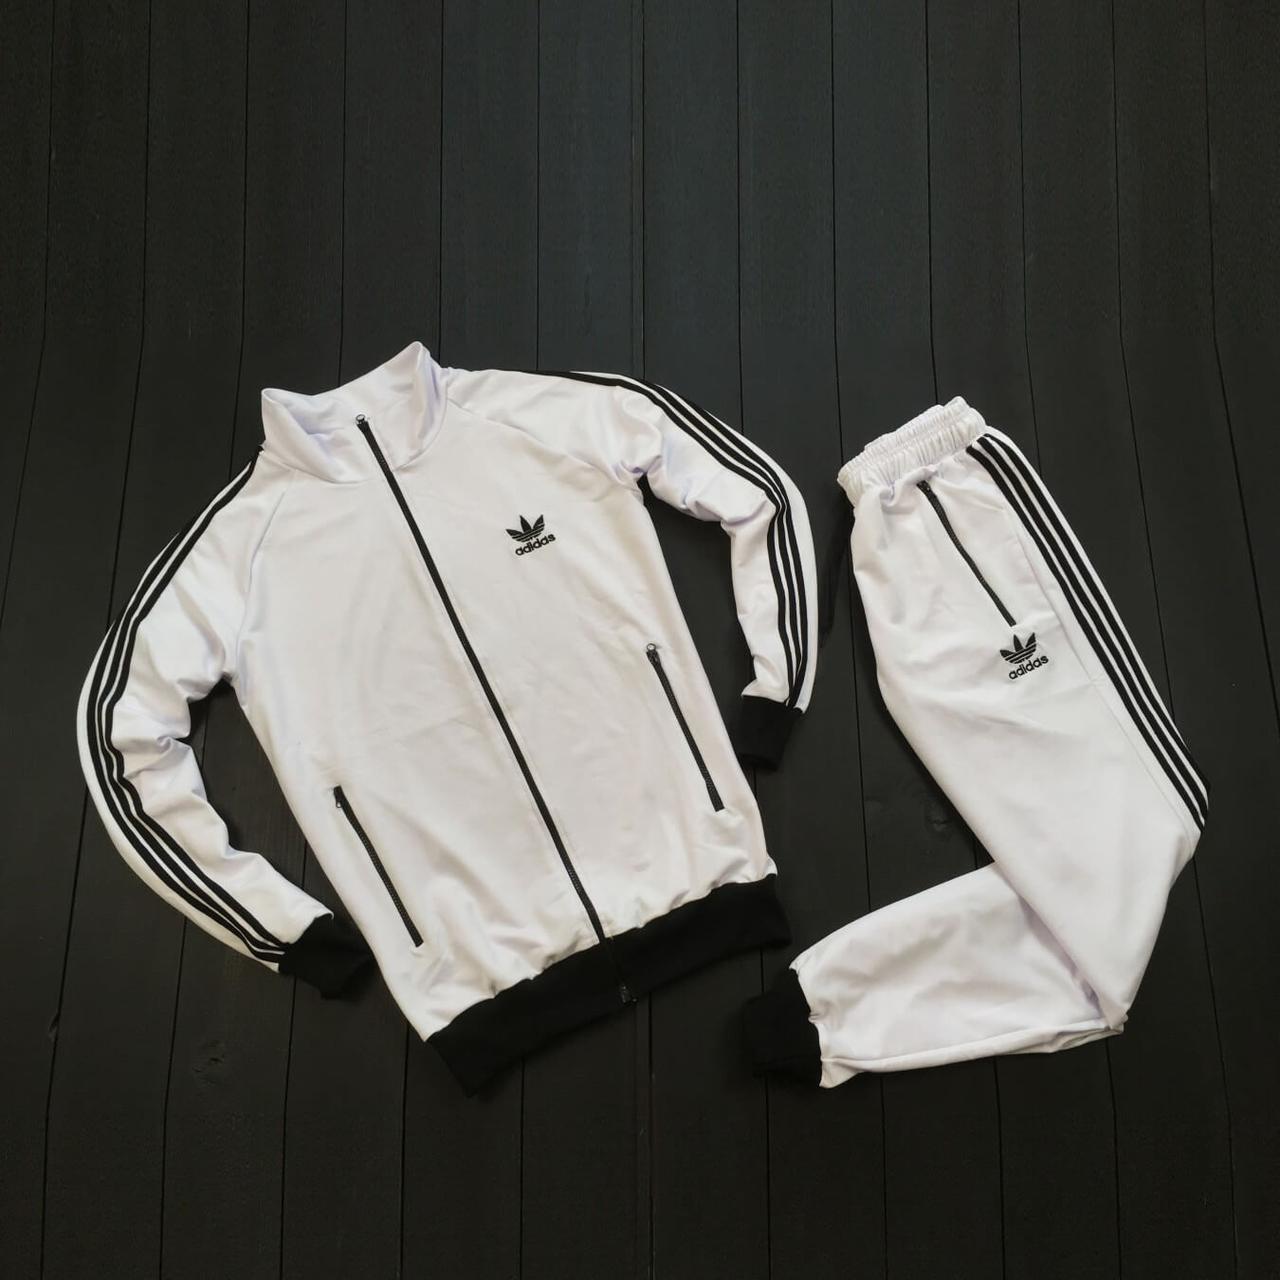 Мужской спортивный костюм Adidas 90-х белого цвета (Спортивный костюм Адидас белый) купить в интернет-магазине